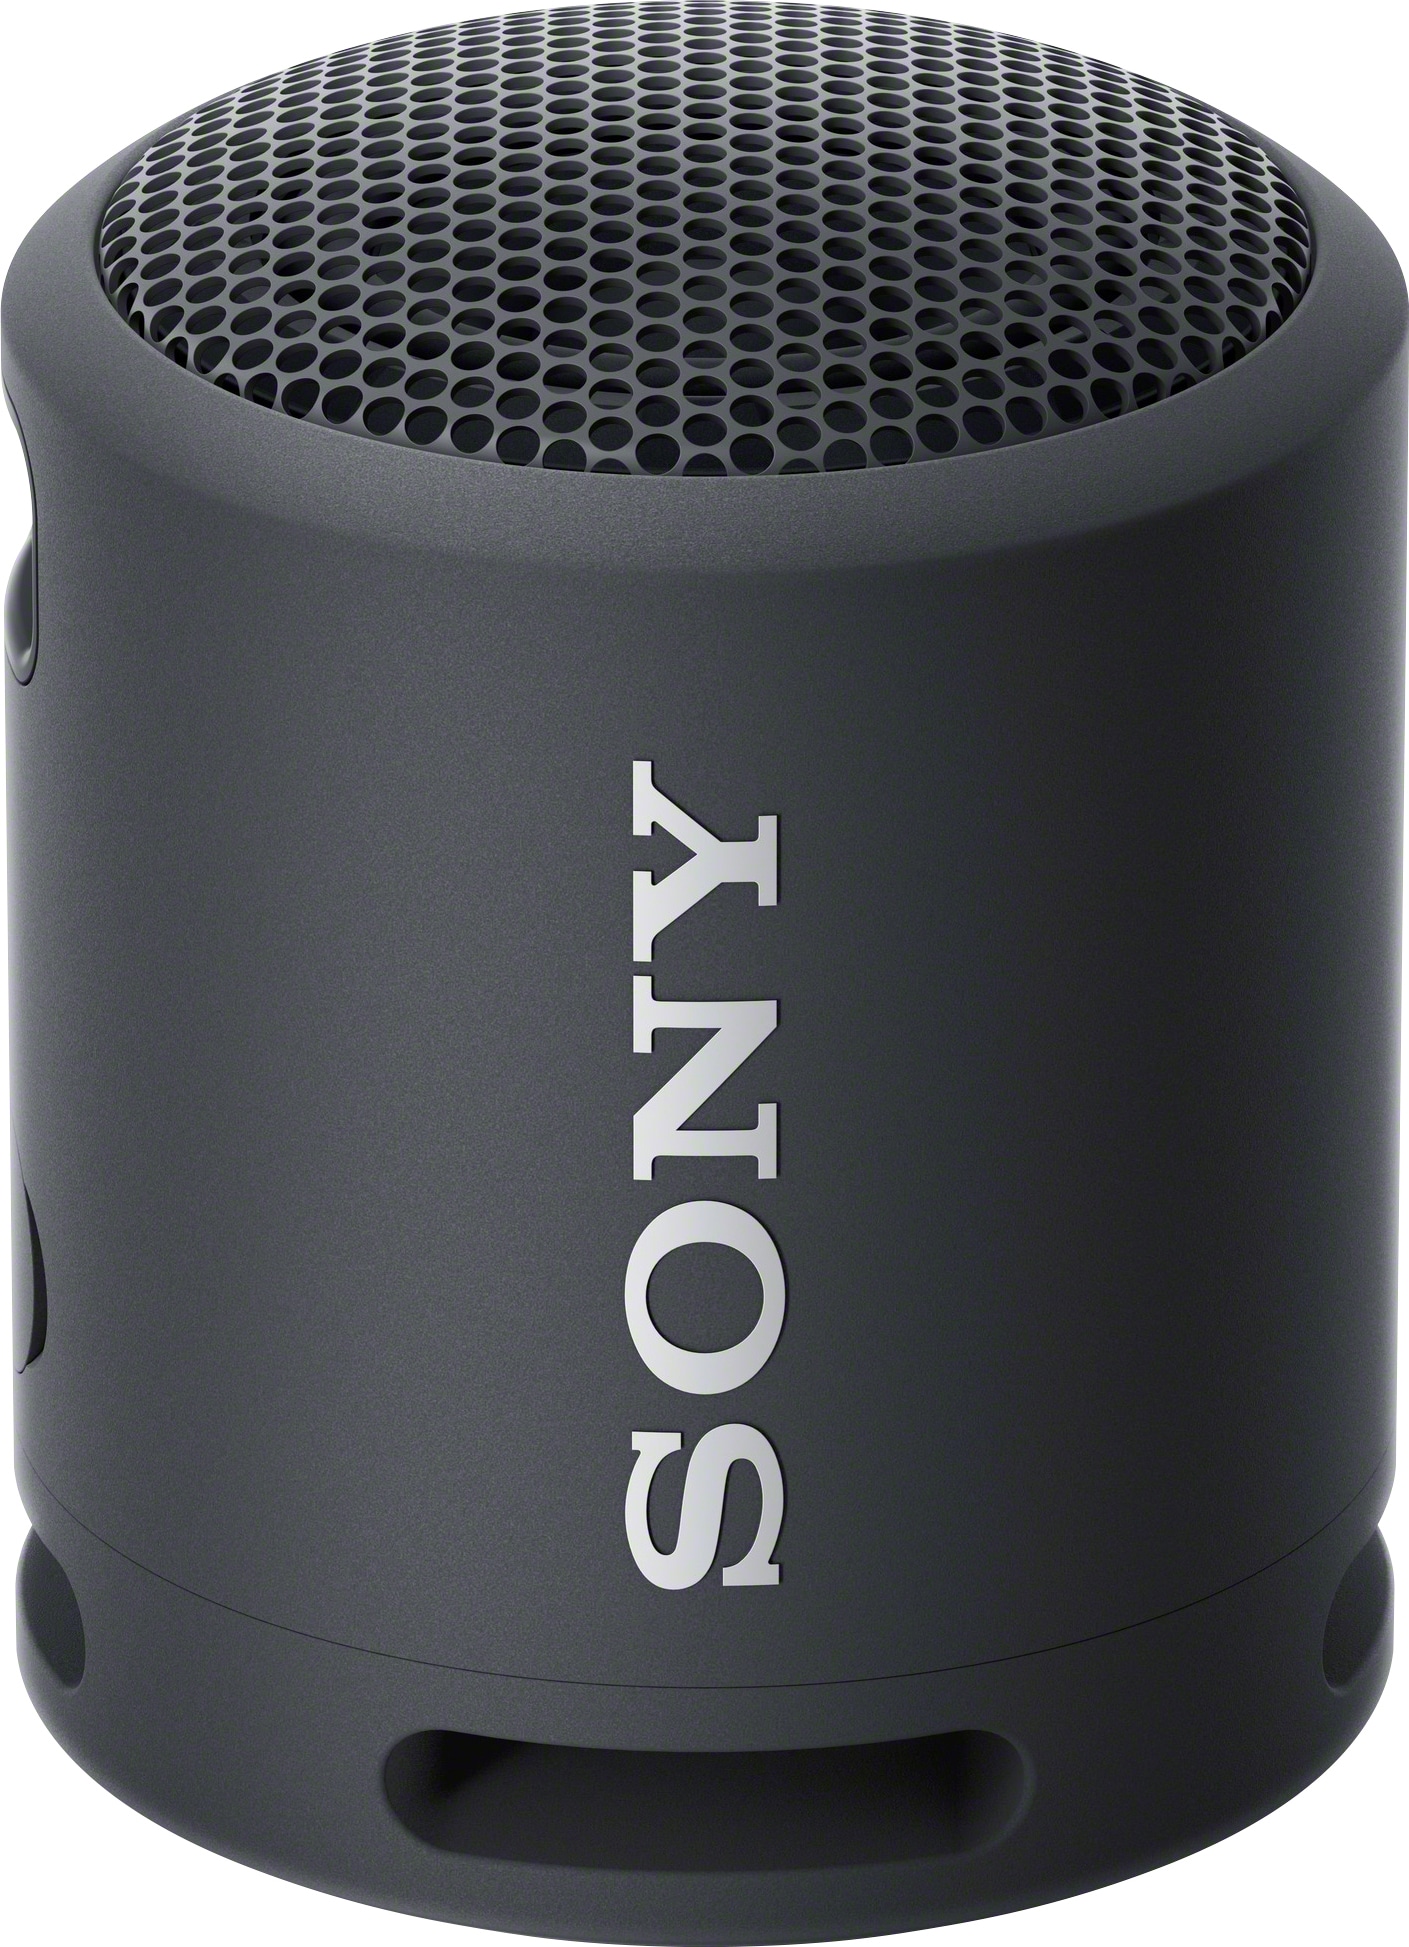 Sony kannettava langaton kaiutin SRS-XB13 (musta) - Gigantti verkkokauppa